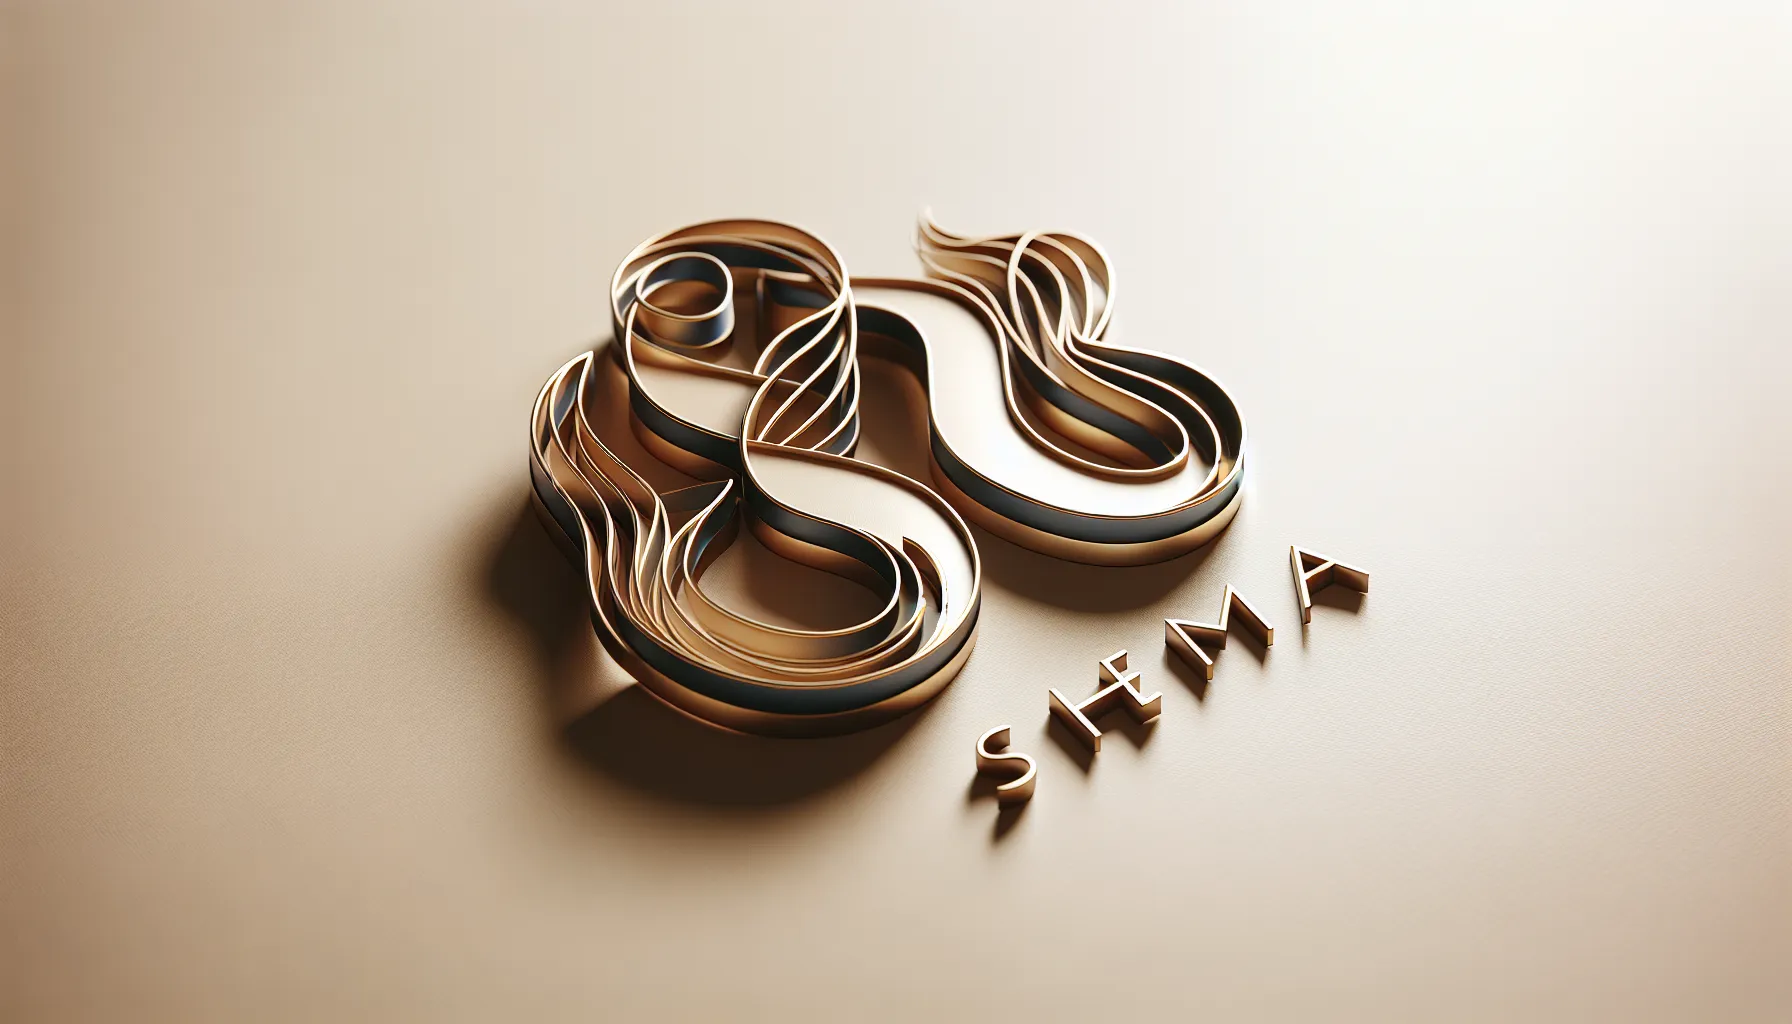 Imagen ilustrativa de la palabra 'Shema' en hebreo y español, con un diseño elegante y moderno.